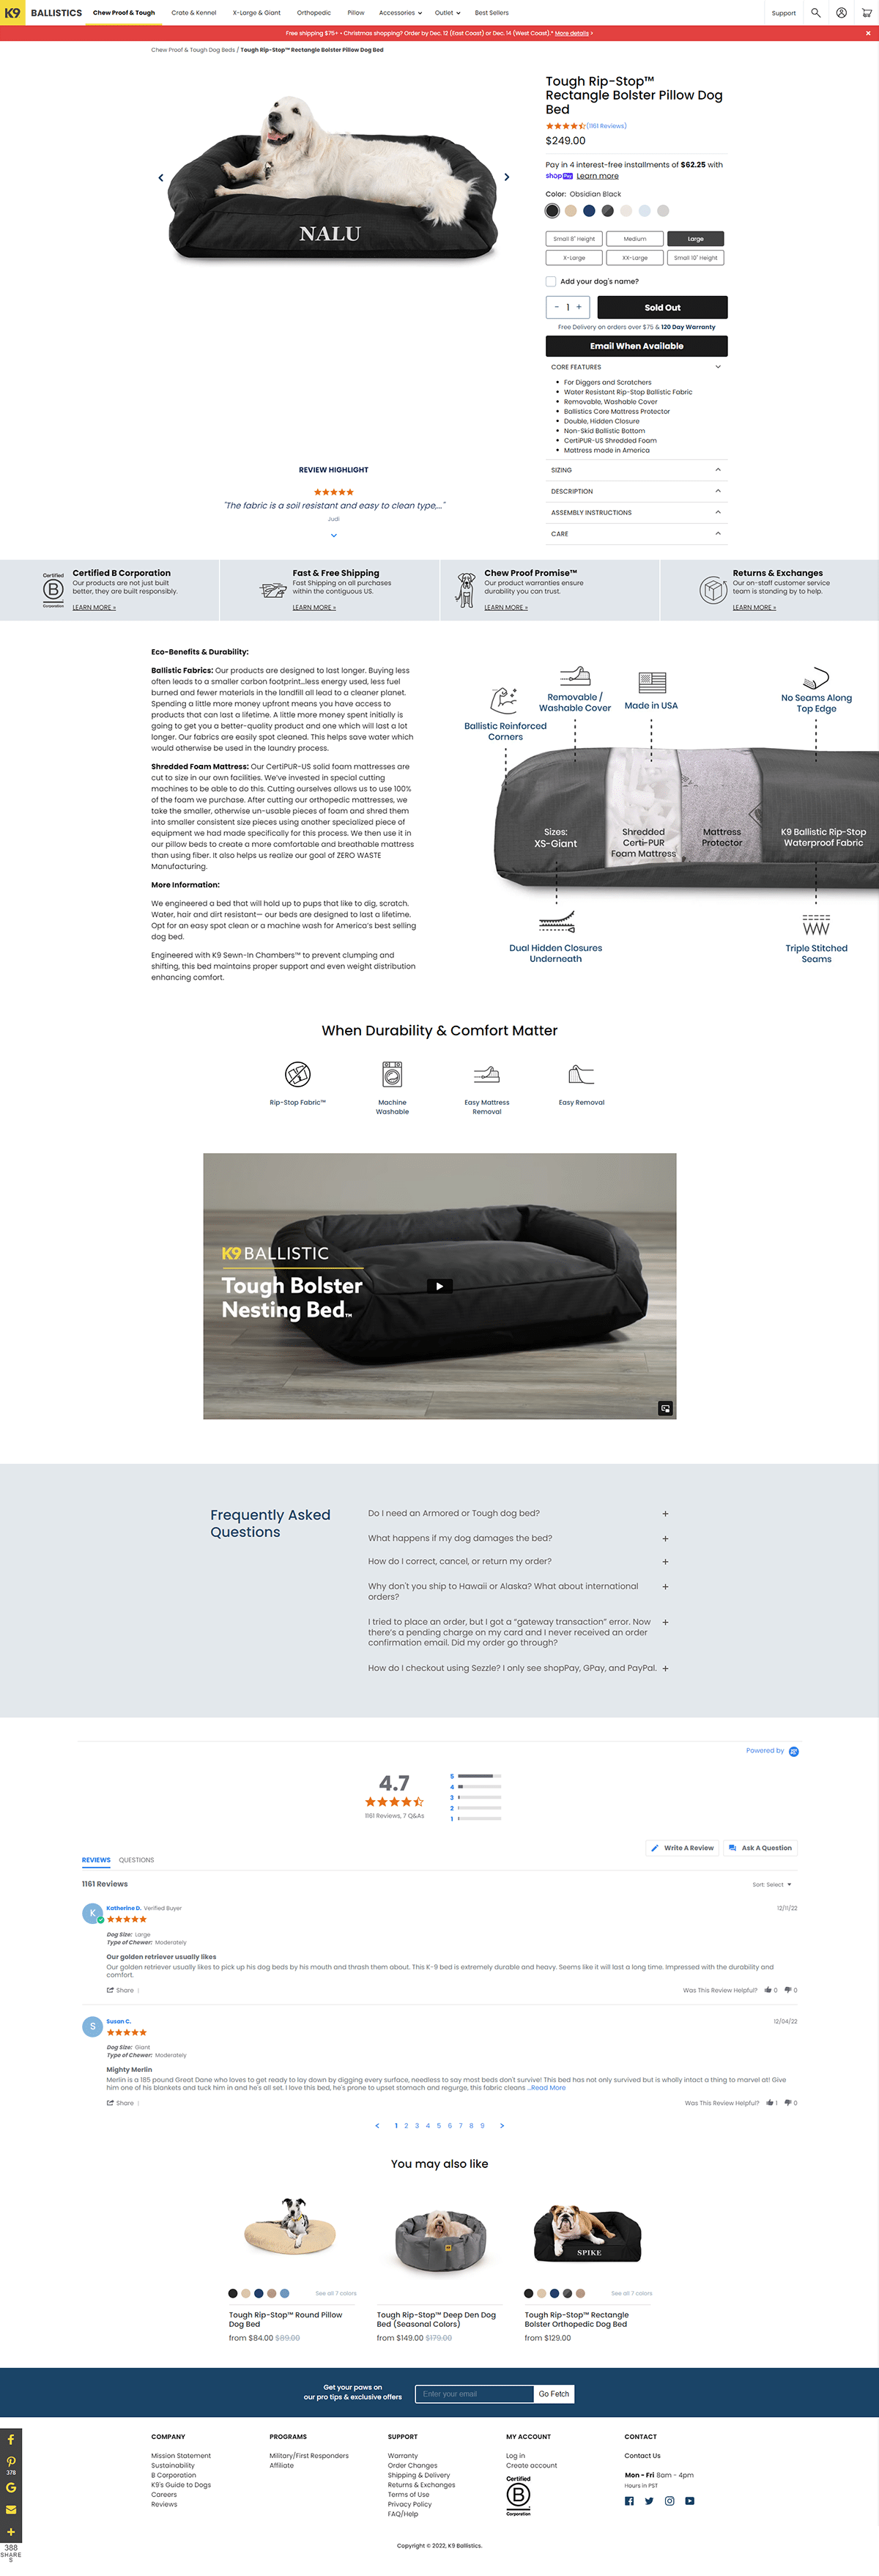 Shopify 产品标题，描述和搜索引擎产品页面 SEO 设置插图3